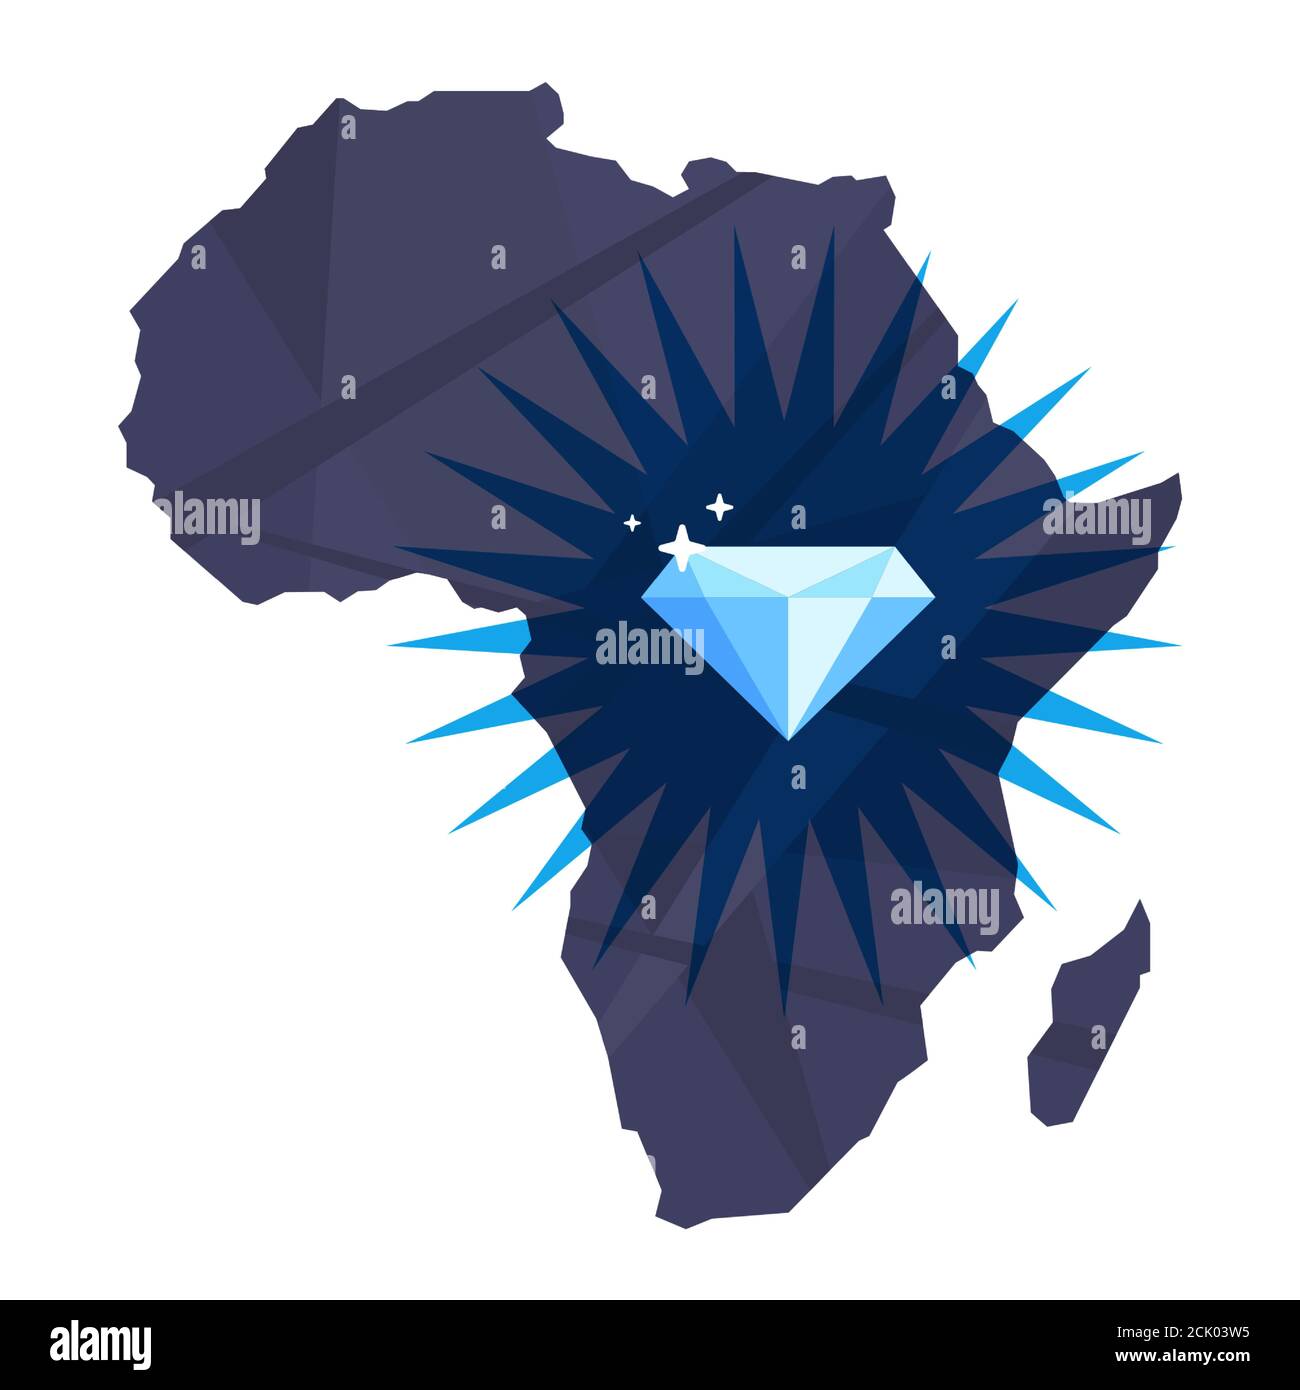 Mine Diamanten und Diamanten auf dem afrikanischen Kontinent. Flache Vektor-Illustration isoliert auf weißem Hintergrund. Stock Vektor